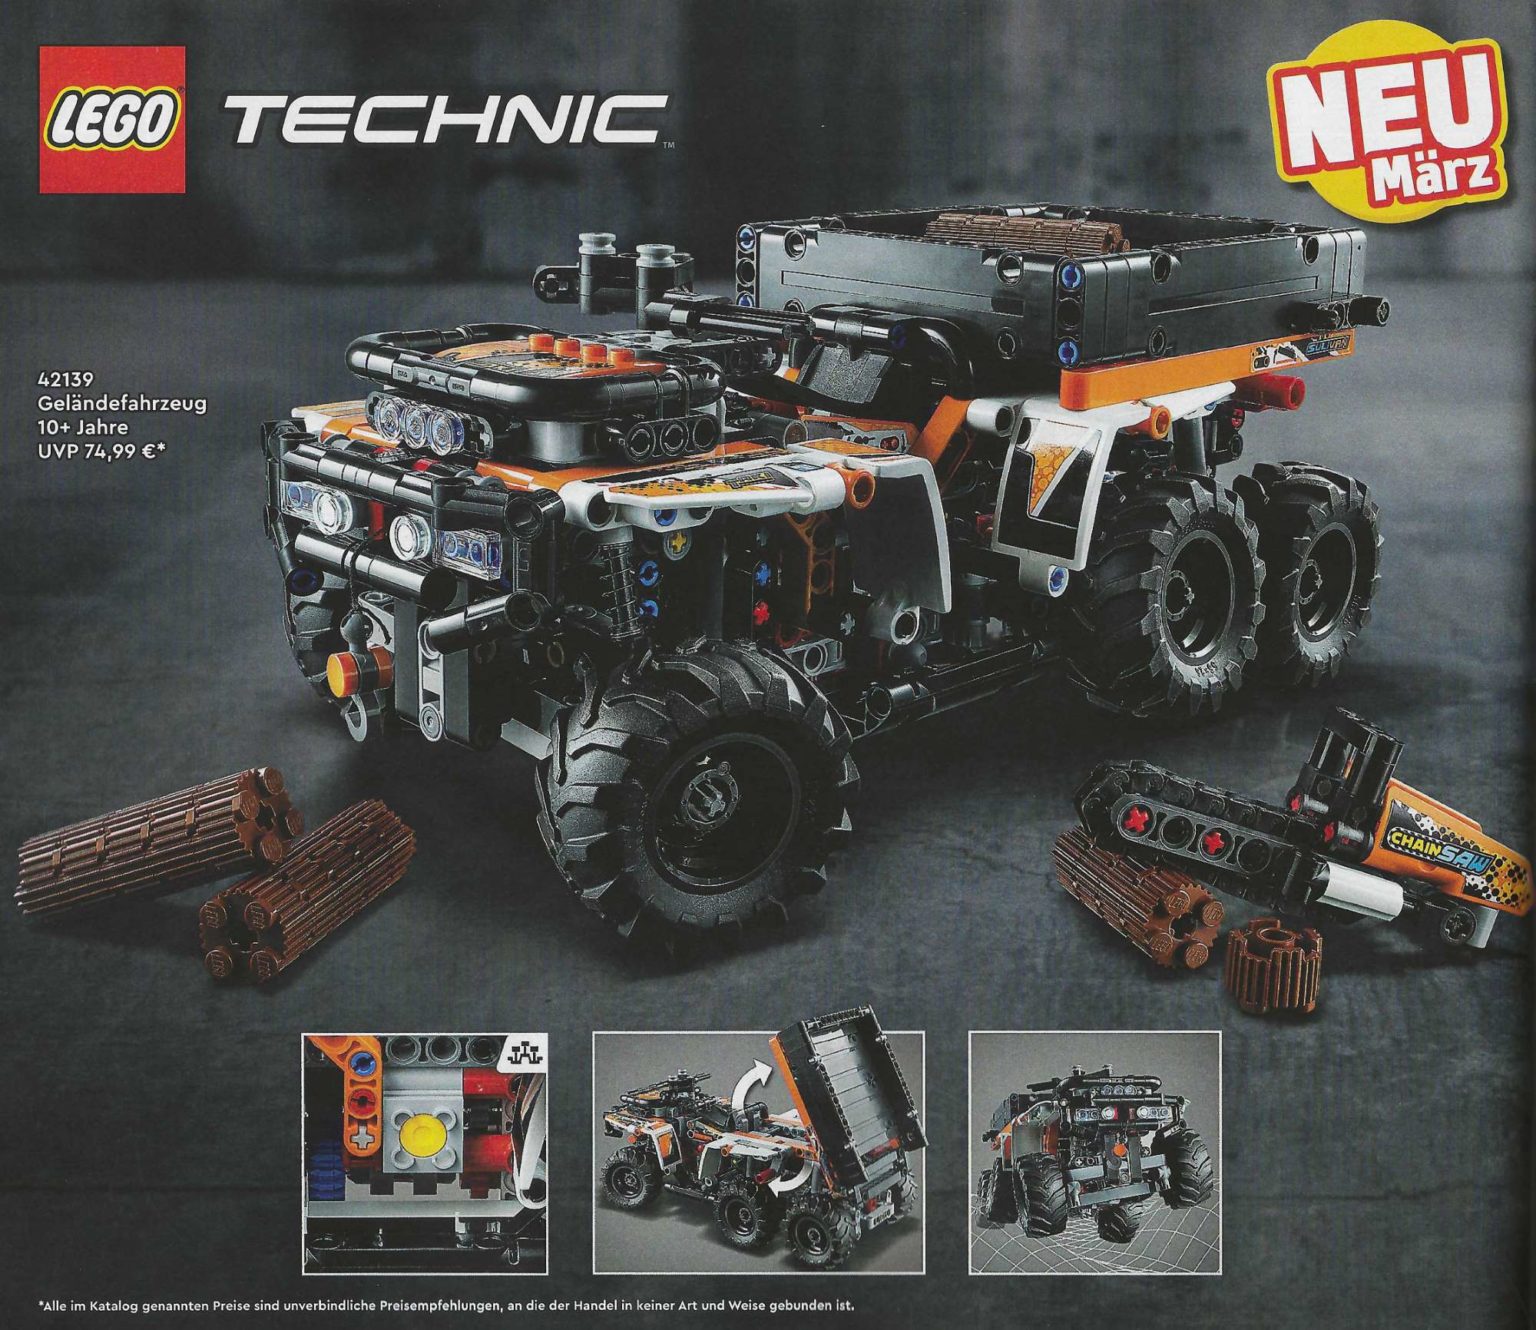 LEGO John - Revealed 9620R Brick (42136) Deere Tractor Technic The 4WD Fan